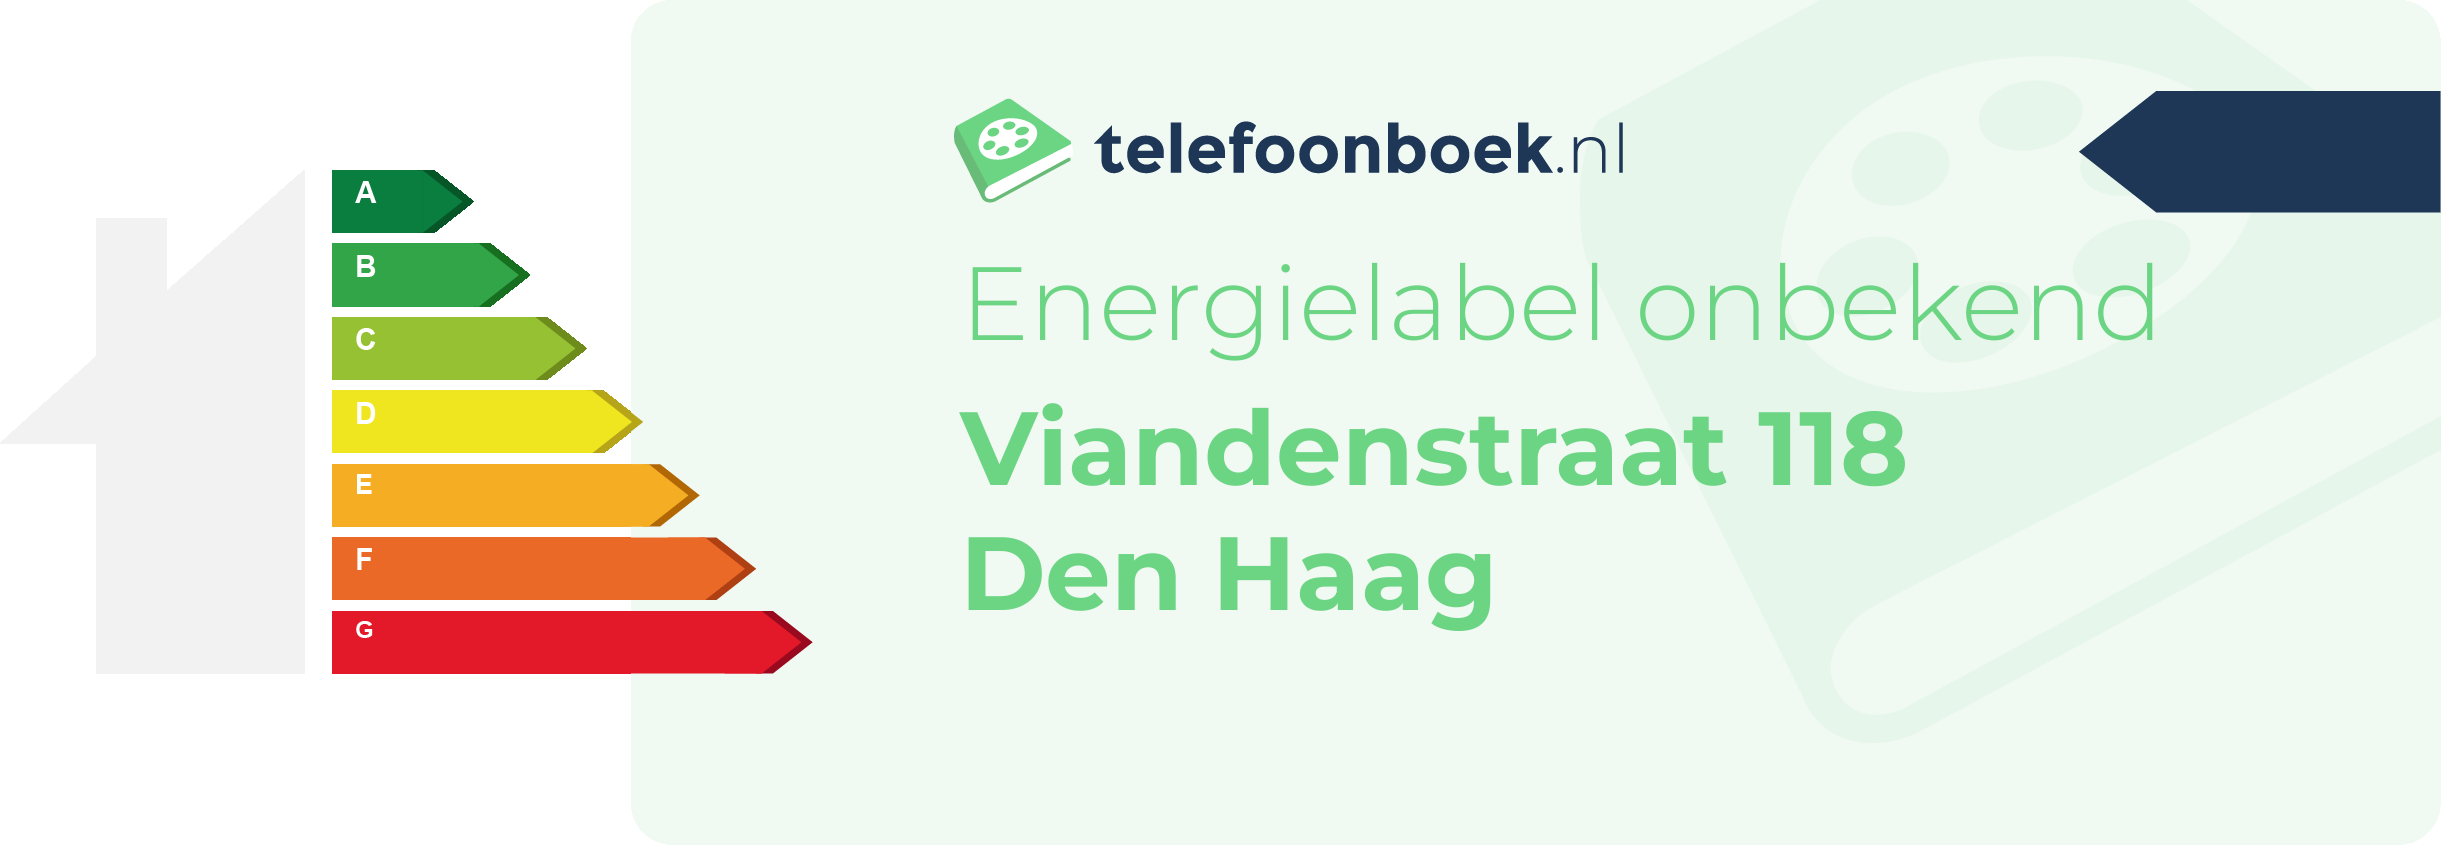 Energielabel Viandenstraat 118 Den Haag